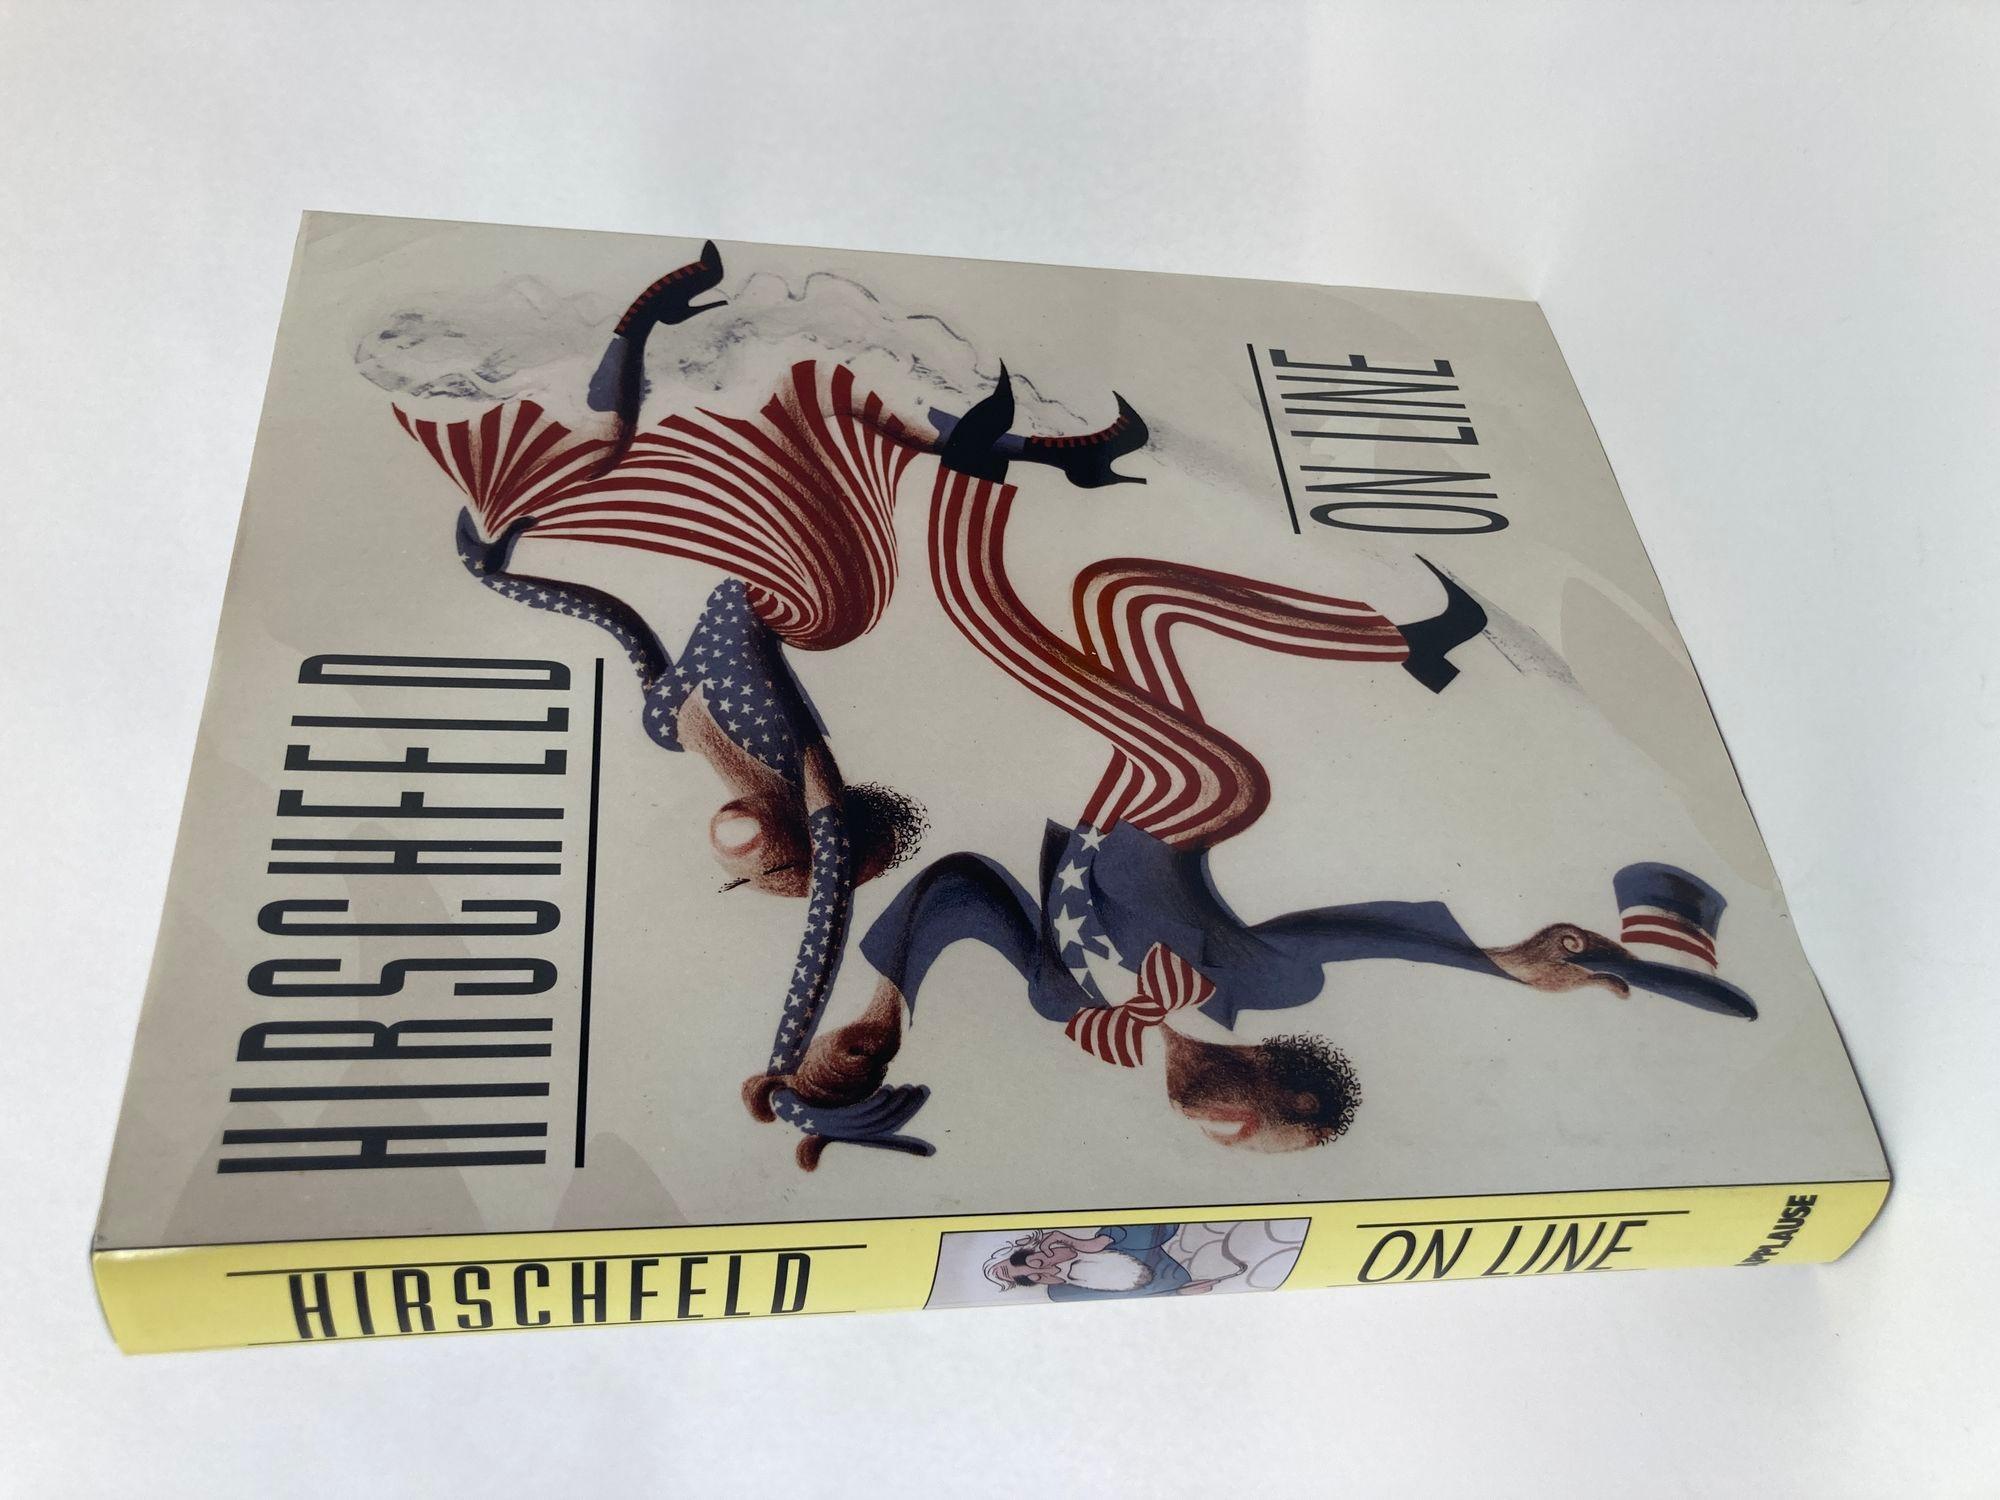 Hirschfeld On Line Livre relié. Plus de 400 dessins et photographies de Hirschfeld, dont beaucoup n'ont jamais été rassemblés auparavant. Comprend des essais de Whoopi Goldberg, Arthur Miller, Mel Gussow, Kurt Vonnegut, Grace Mirabella, Louise Kerz